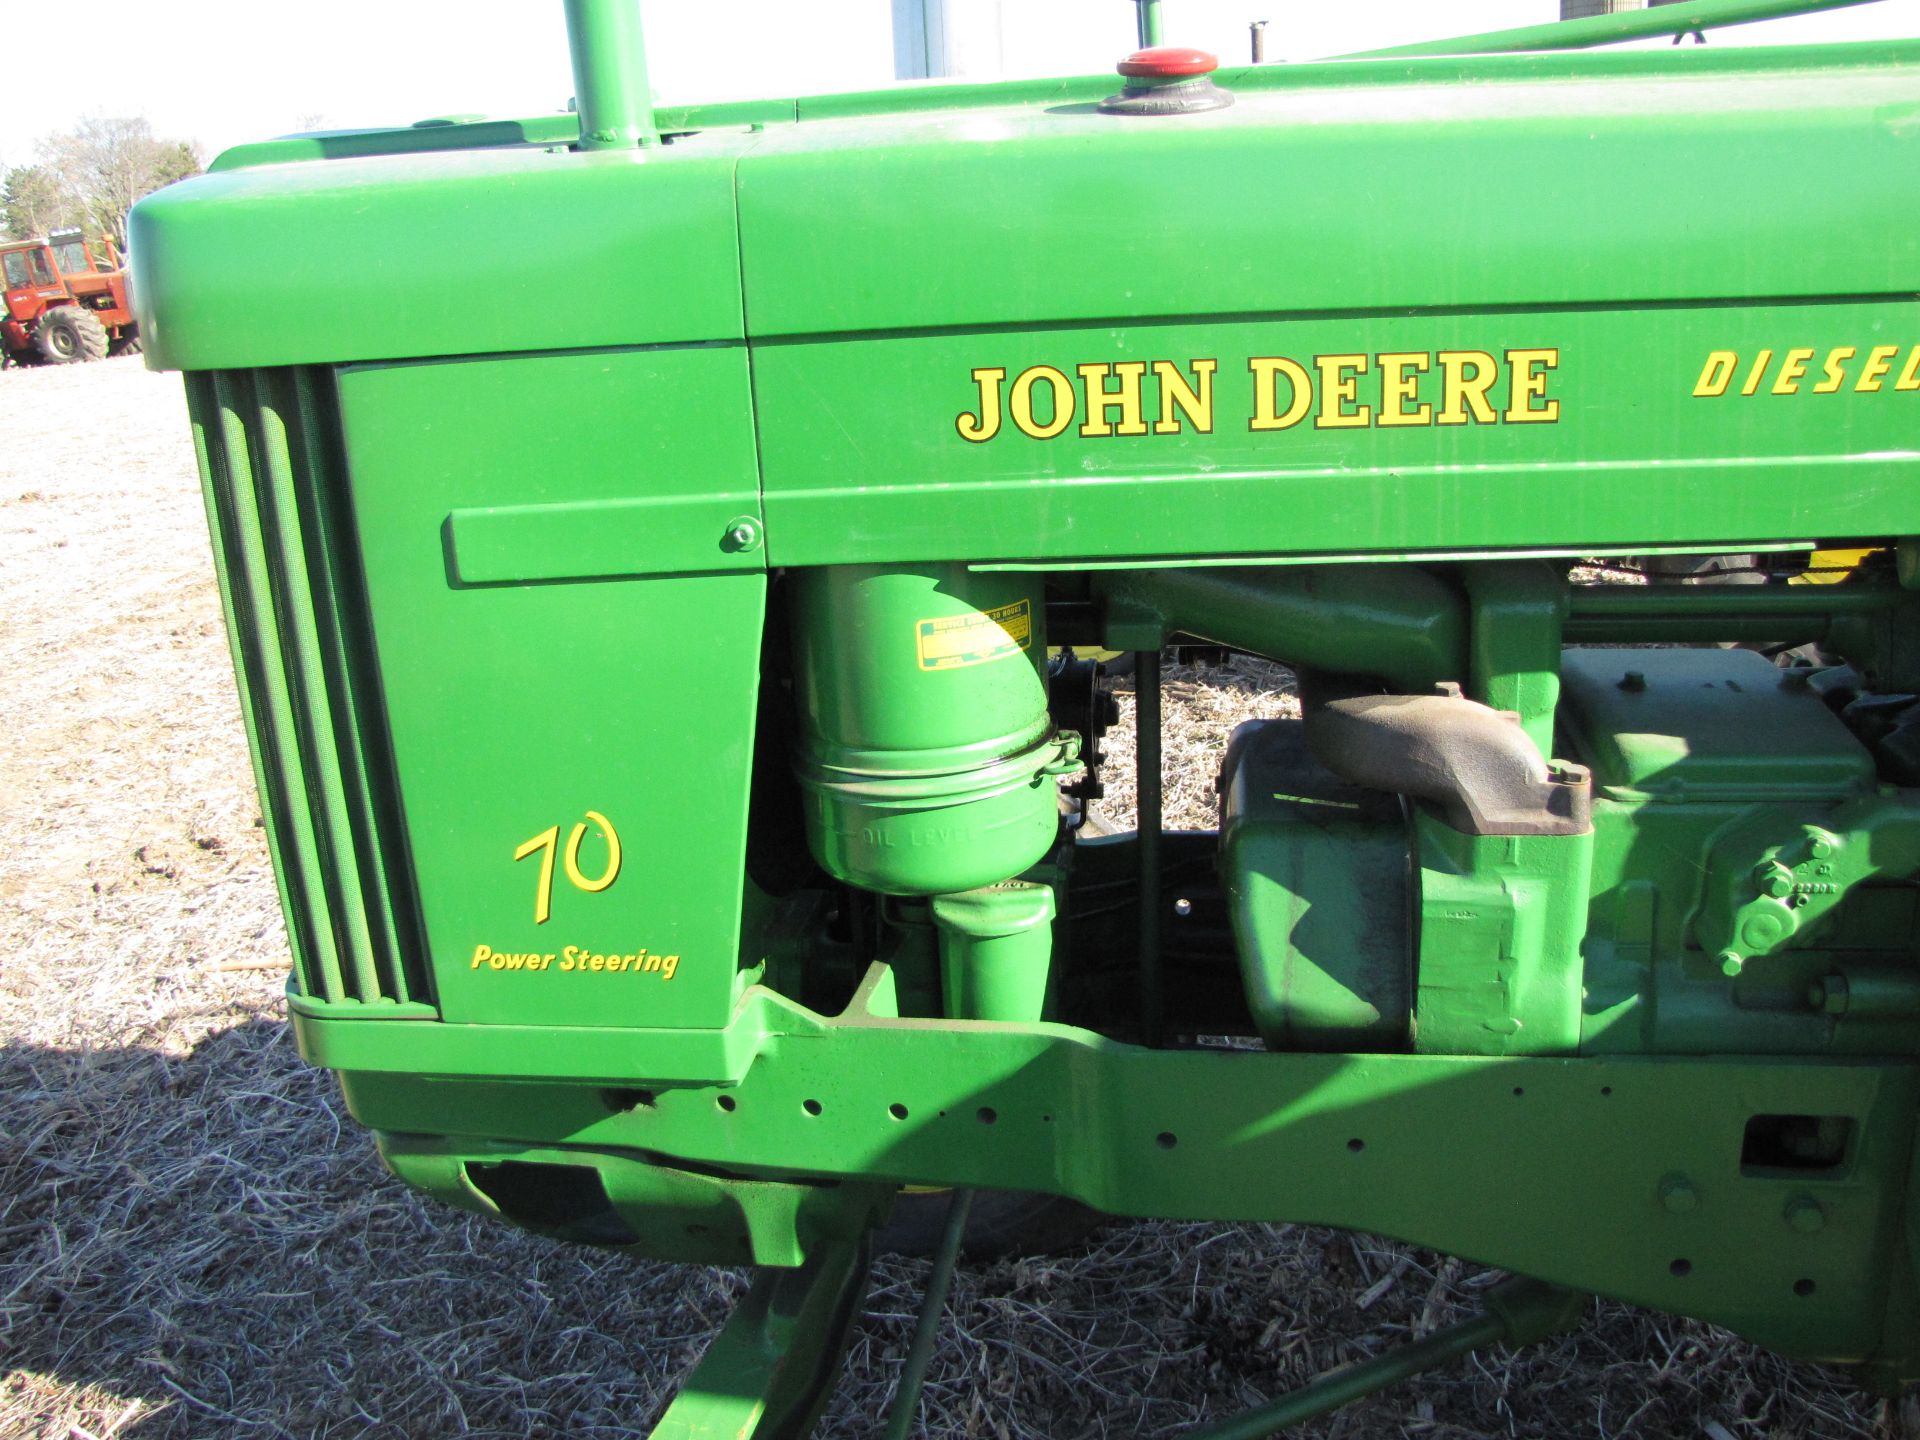 John Deere 70 Tractor - Image 13 of 47